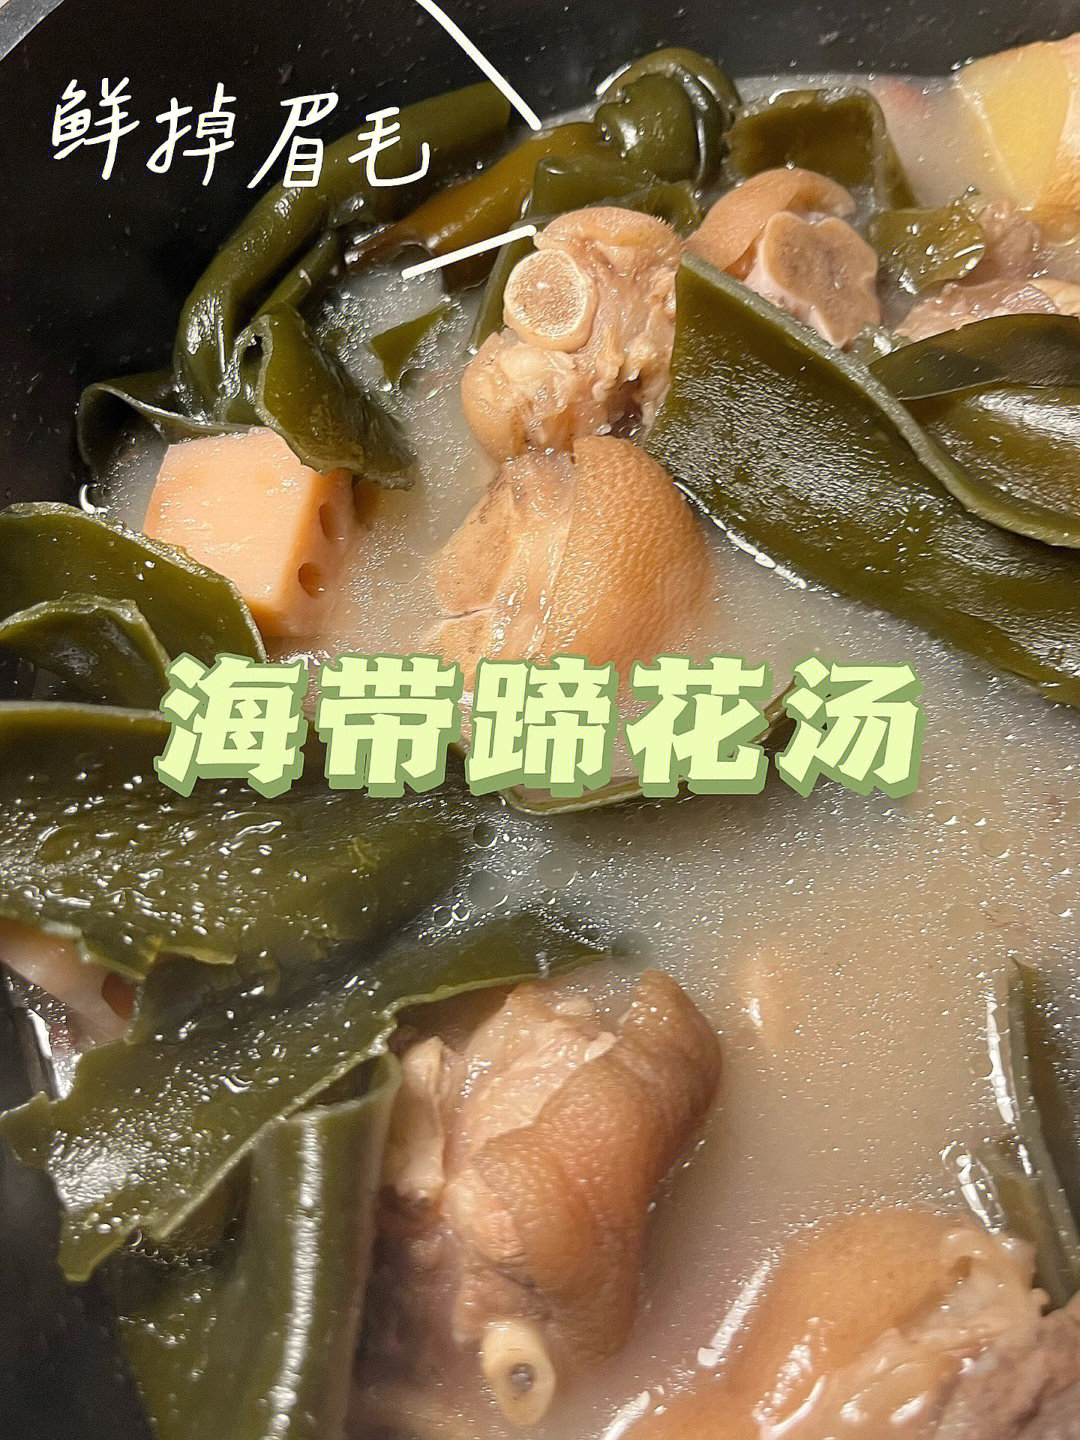 浓汤系列海带蹄花汤满足你的中国胃